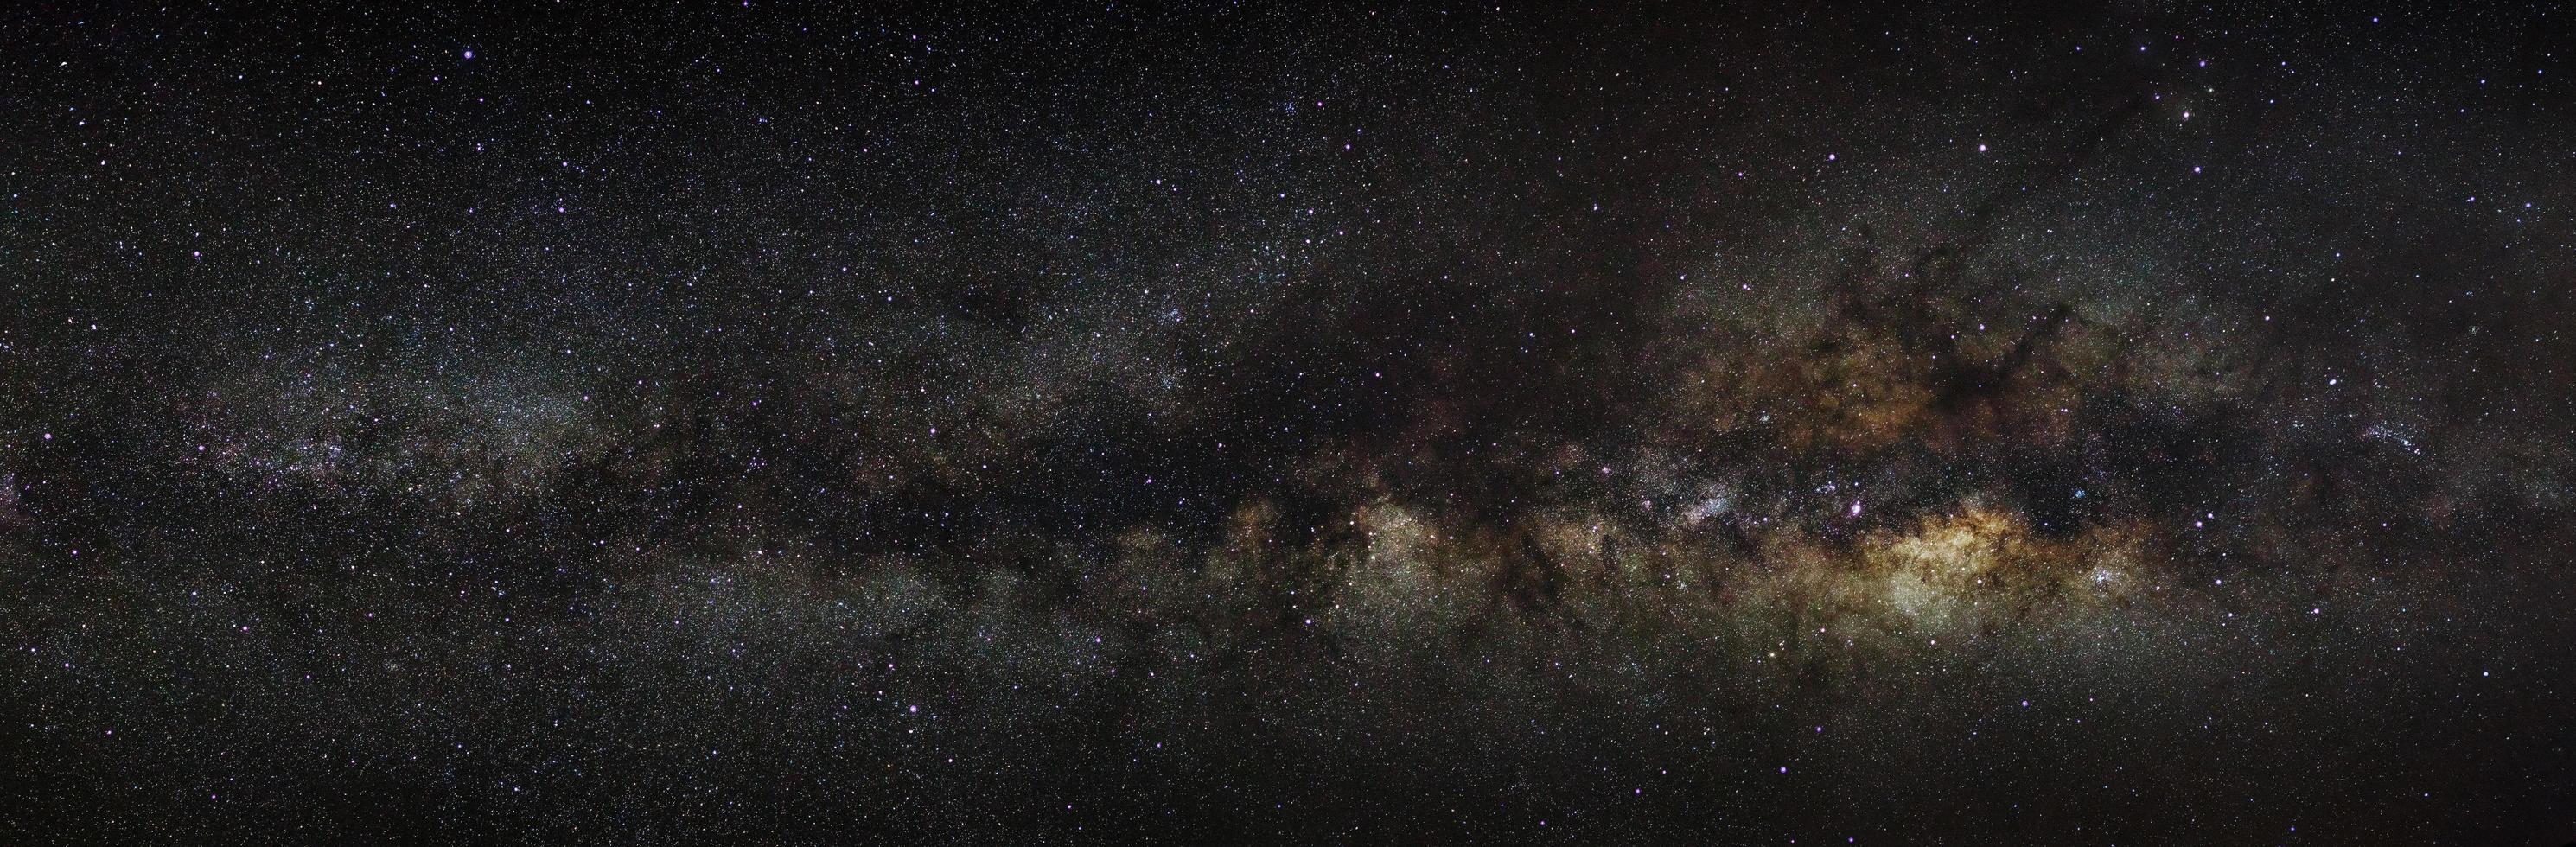 Vintergatan galax på en natthimmel, lång exponering fotografi, med korn. foto